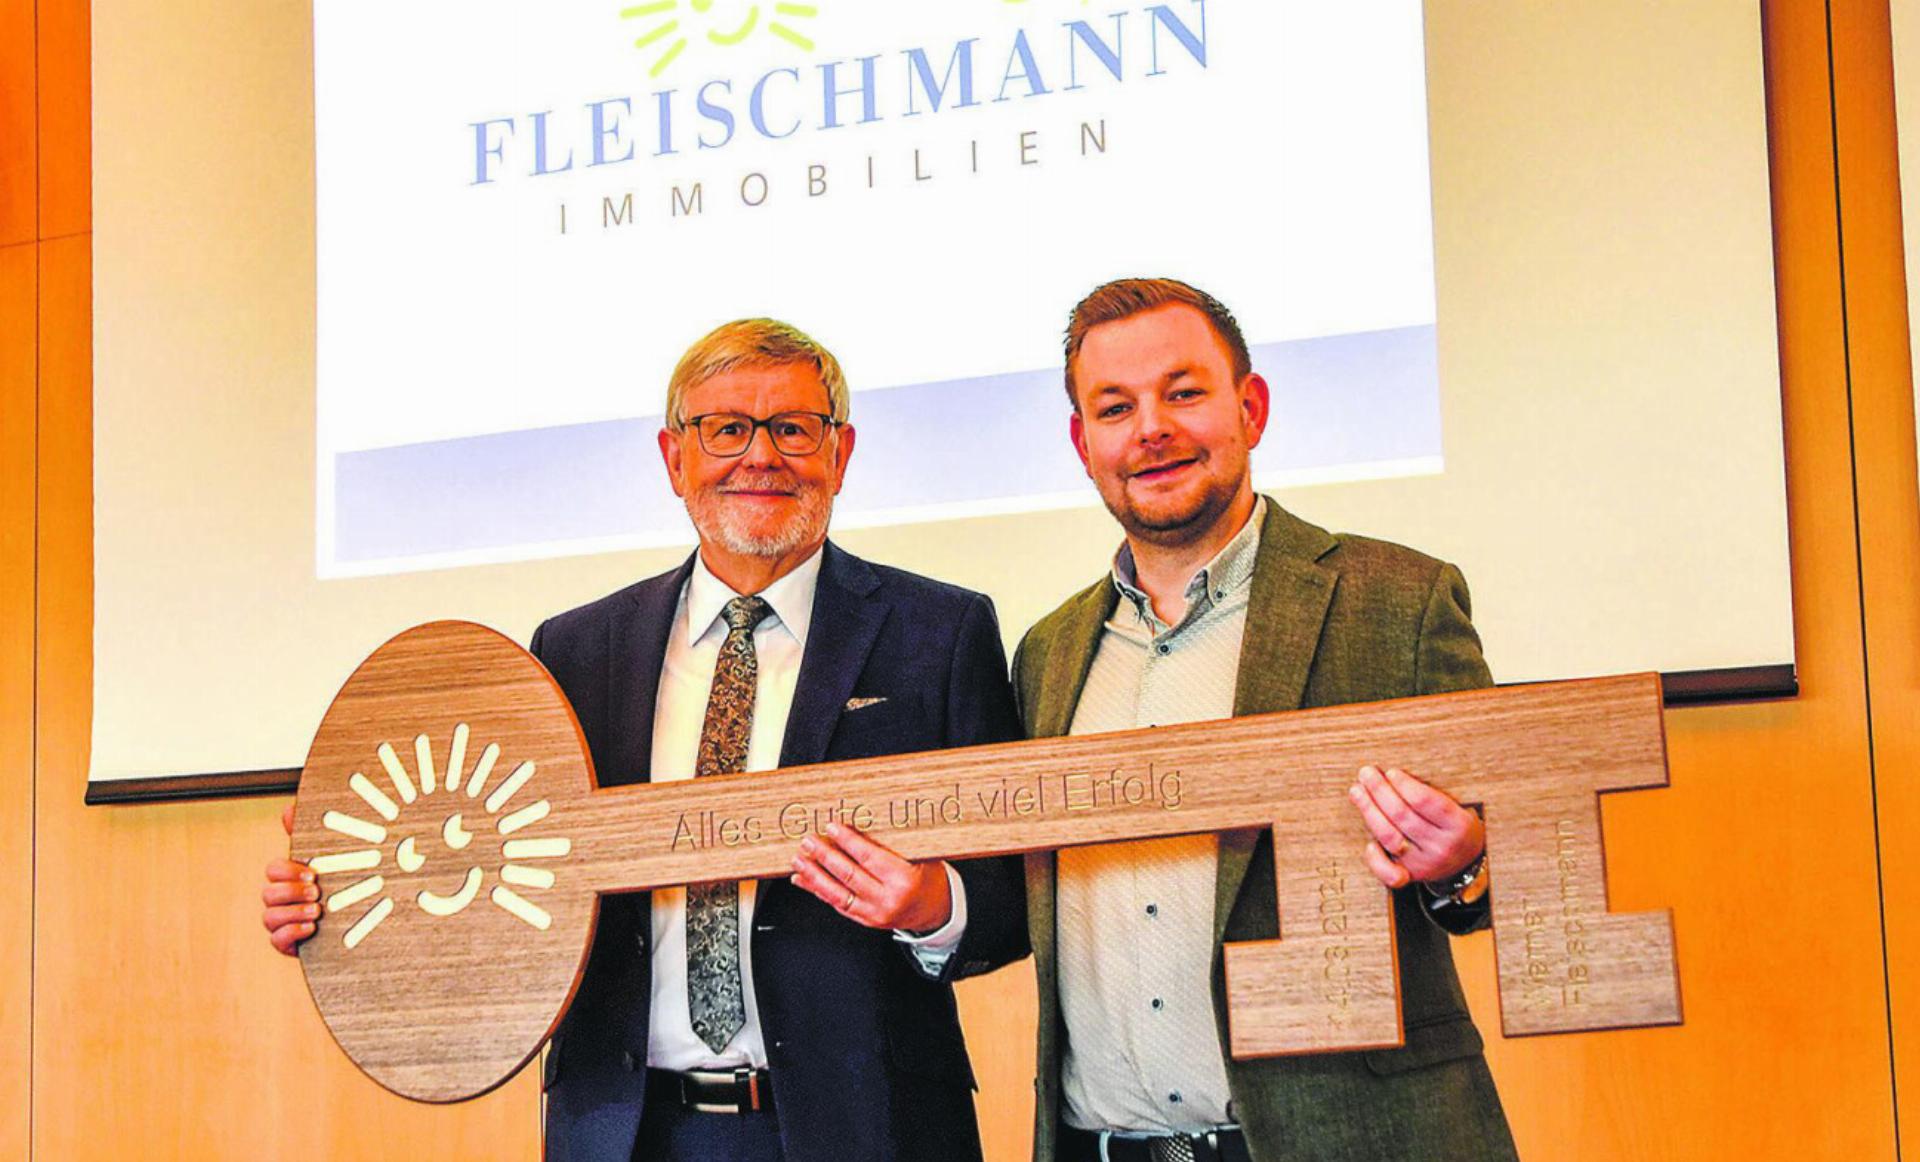 Matthias Fleischmann übernimmt von seinem Vater Werner offiziell die Verantwortung für Fleischmann Immobilien. Bild: zvg